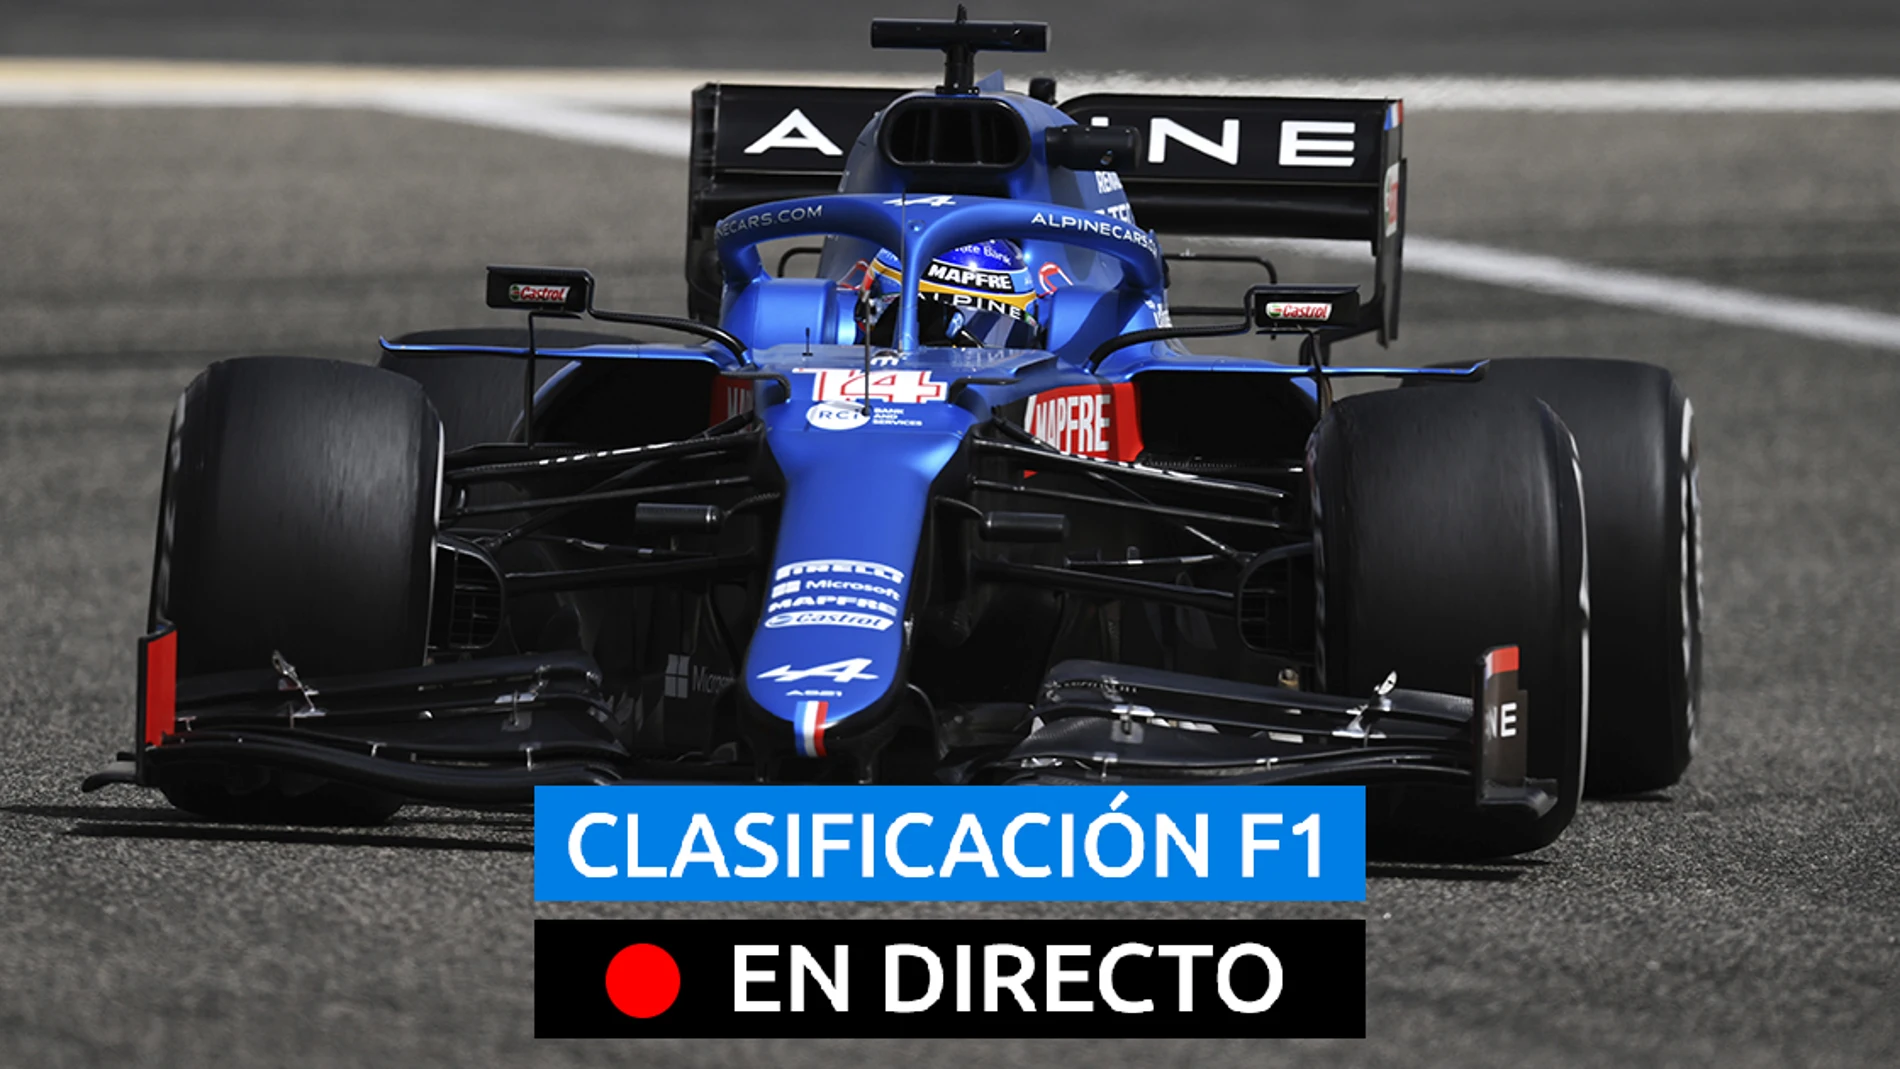 Fernando Alonso, piloto de Alpine F1